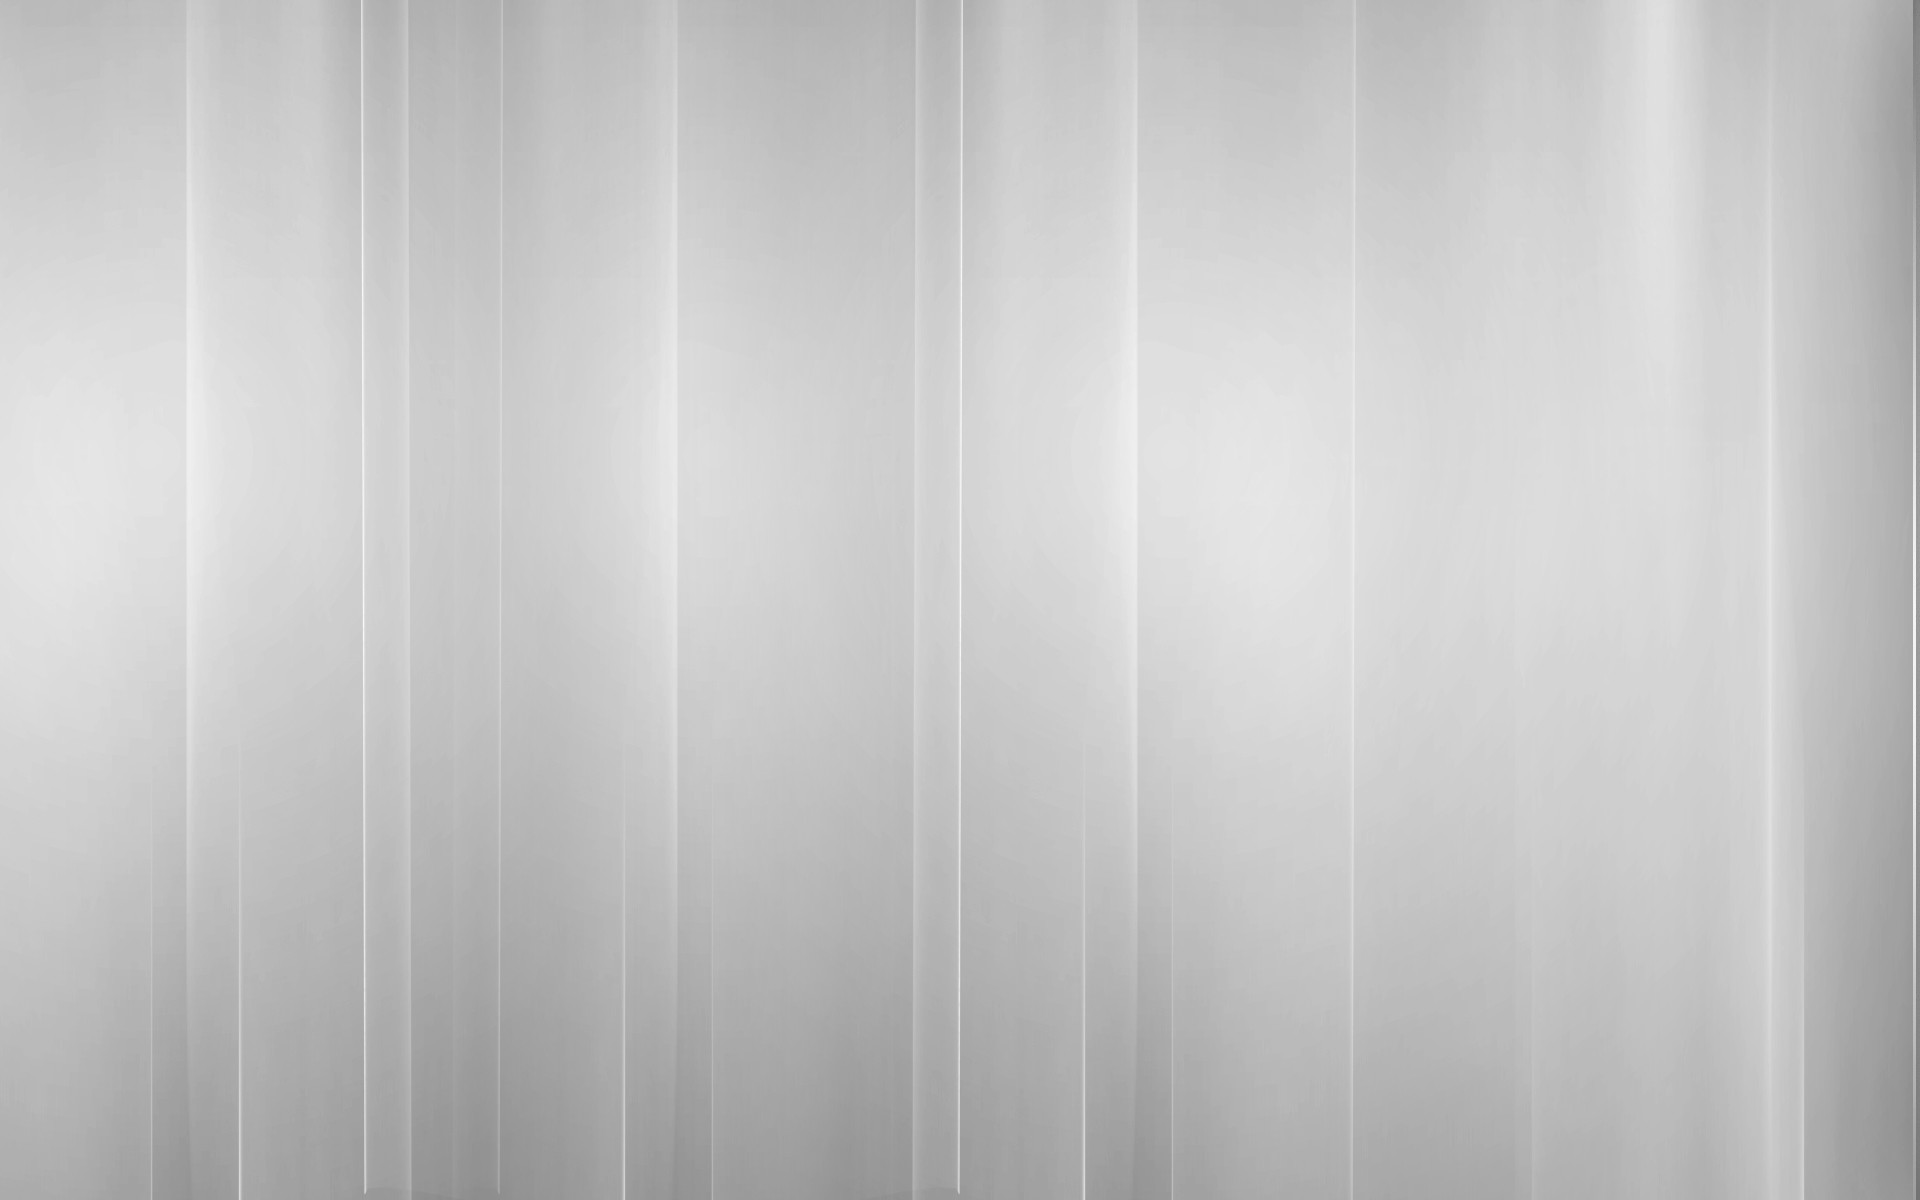 1920x1200 All White Background for Desktop | PixelsTalk.Net